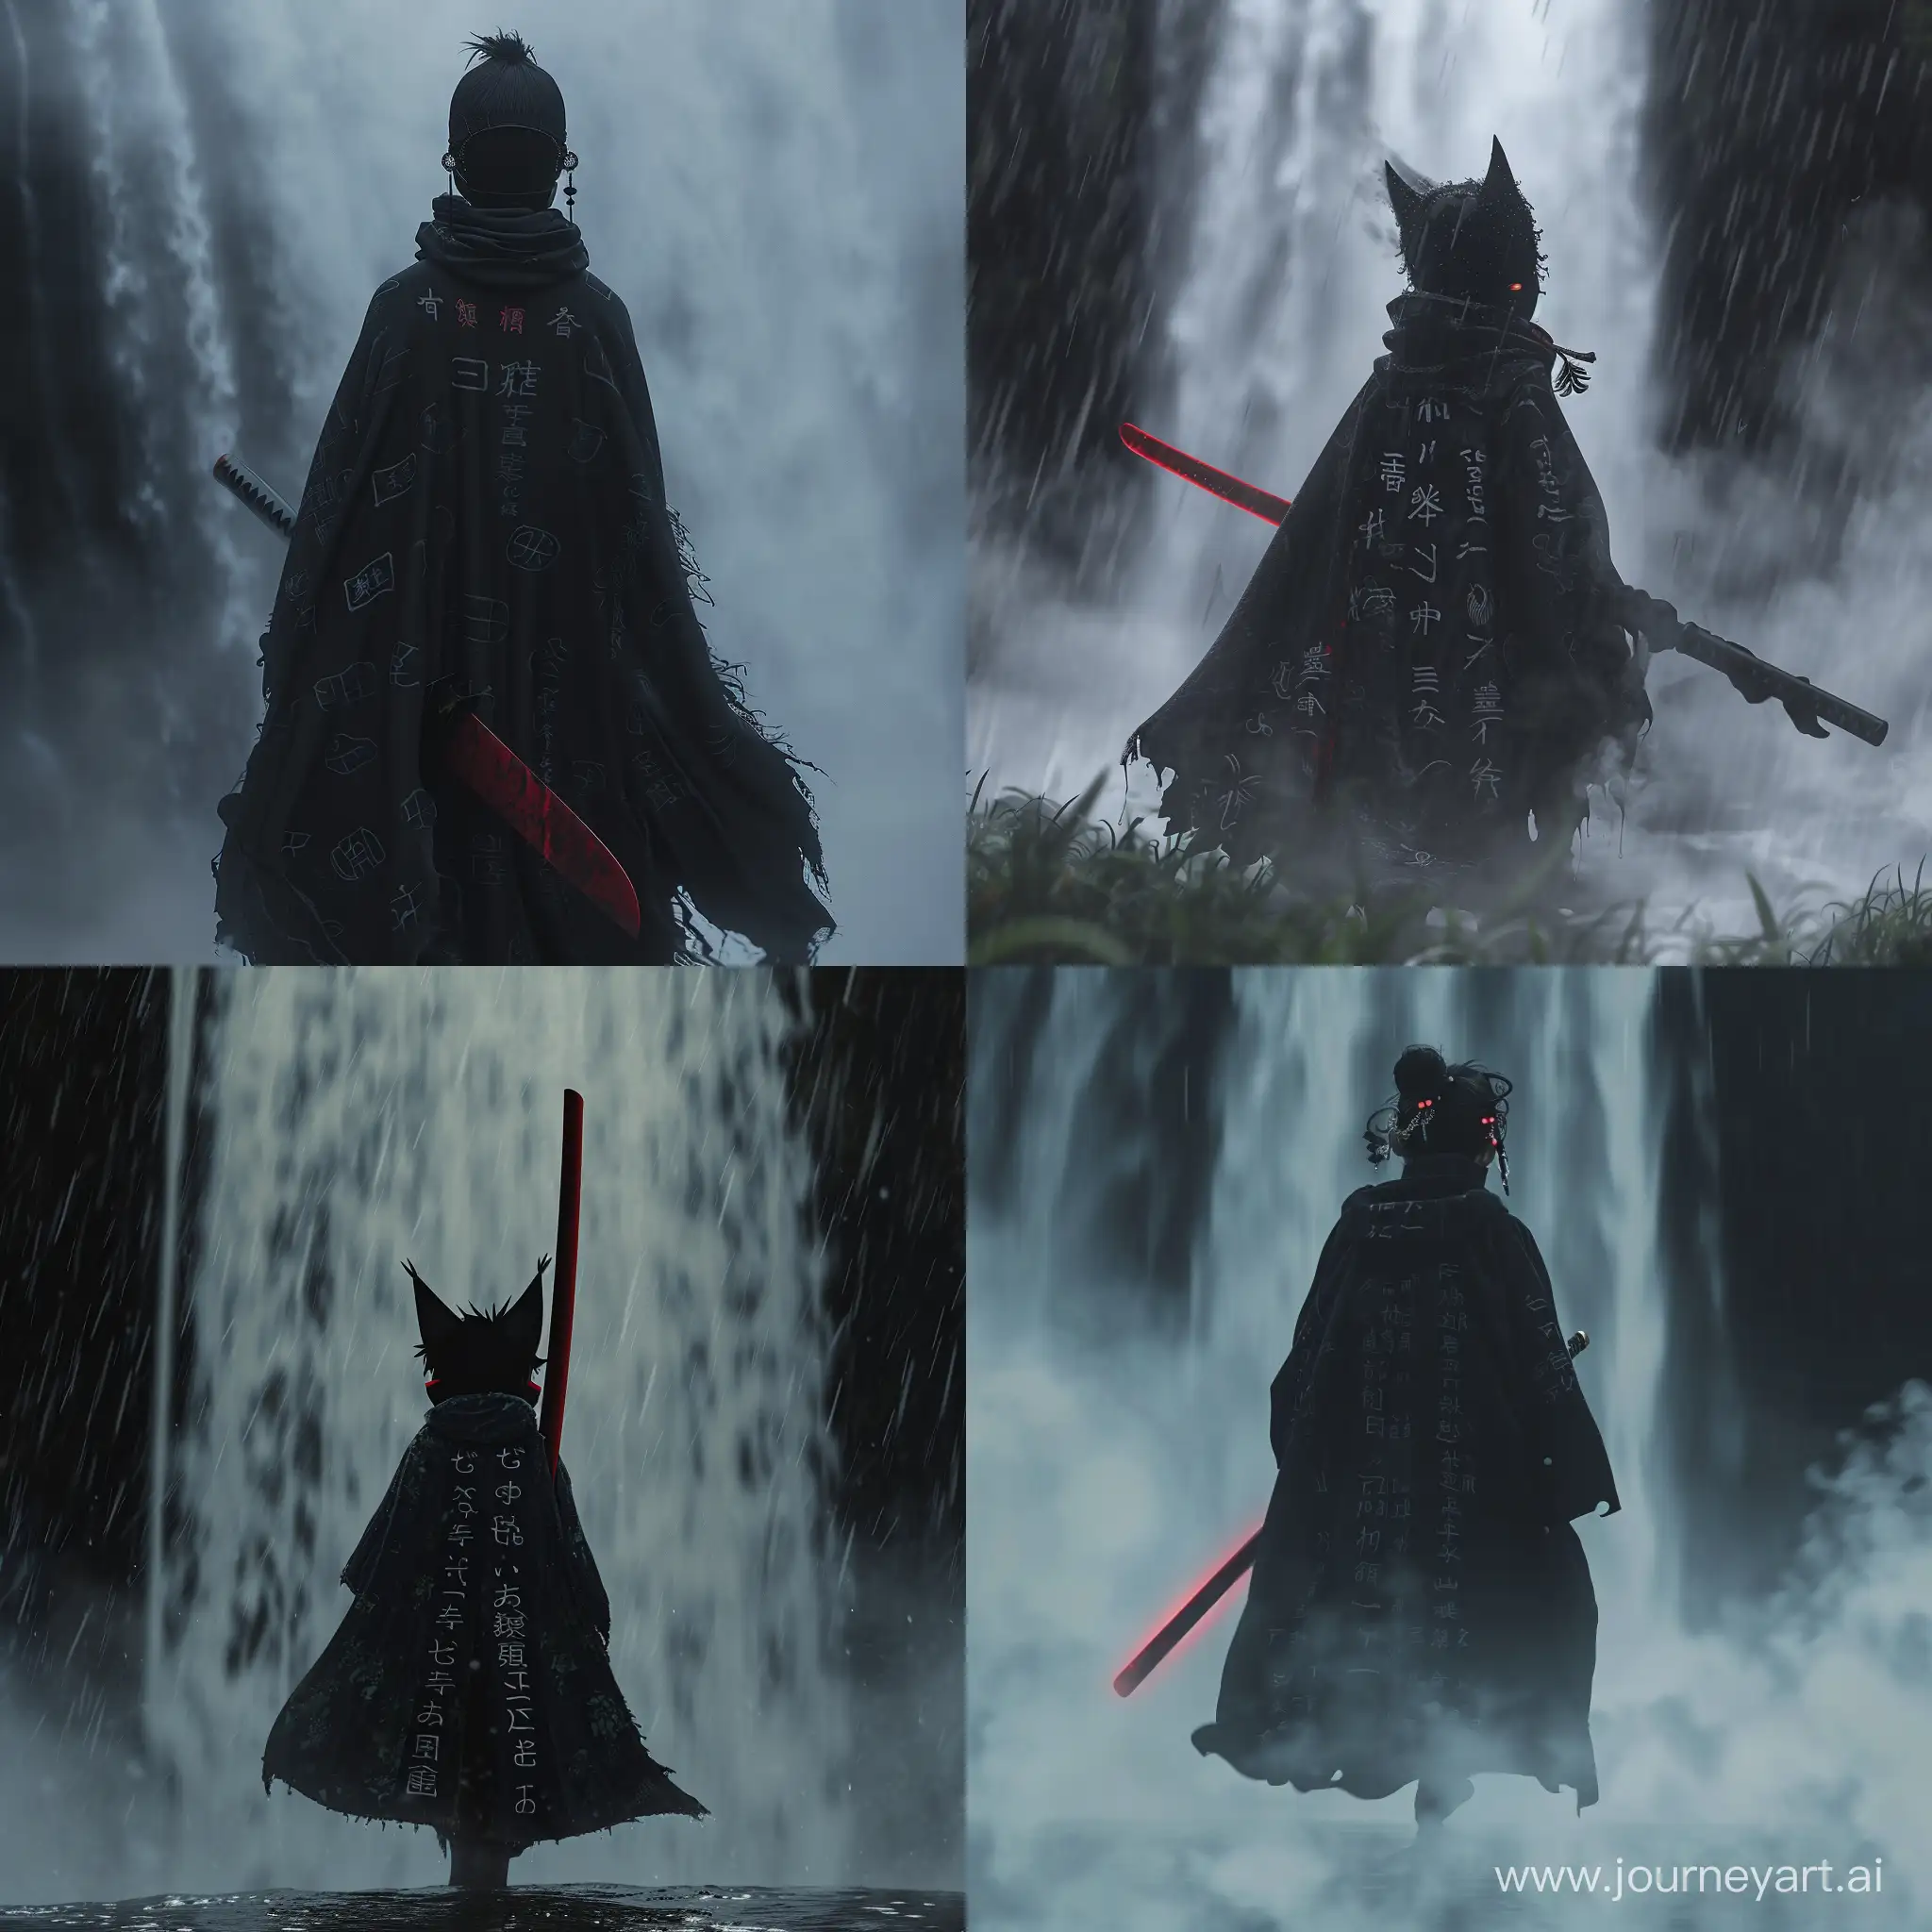 Маленький демон, ходящий тумана, под завесой тумана, держа в руках темно красный меч, чёрный плащ с японскими надписями, японские серьги на ушах, с закрытым маской лицом, сзади чёрный водопад. Style anime